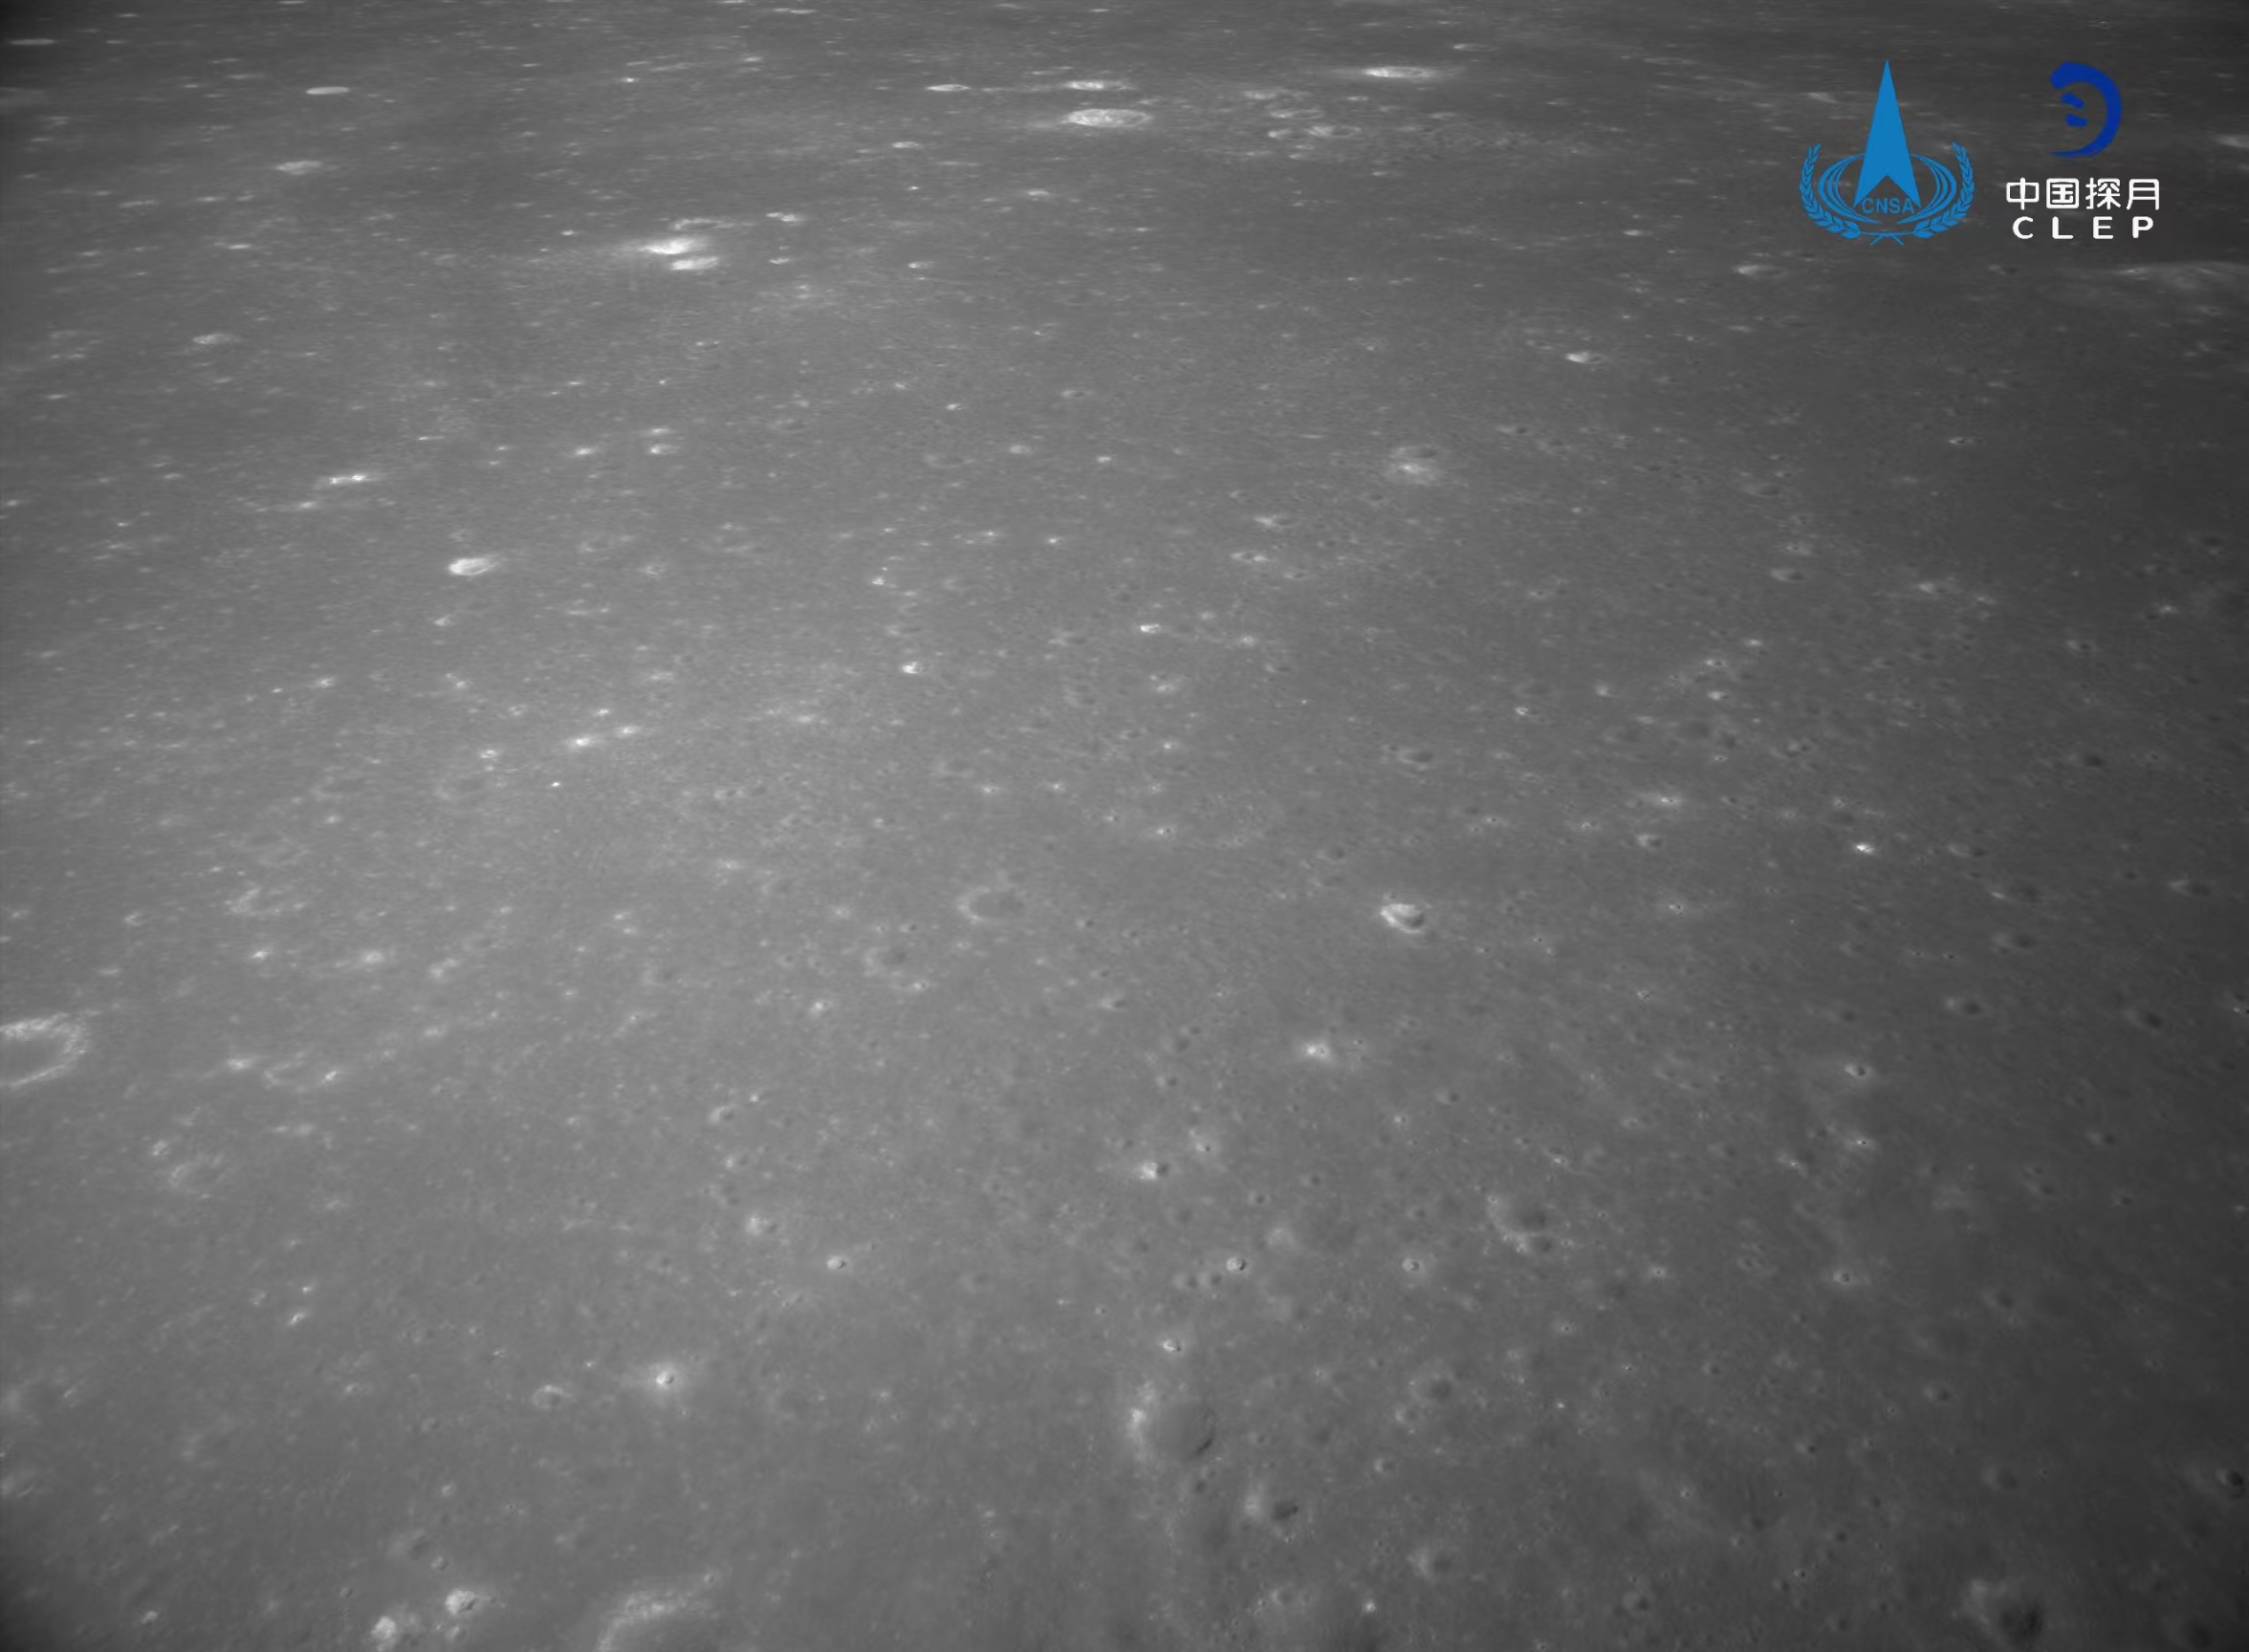 该图由降落相机在降落过程中拍摄，对着陆点北侧月面拍摄的彩色图像镶嵌制作而成
。图像上方是着陆点北部查菲环形山，	   </td></tr></table></div><var dropzone=